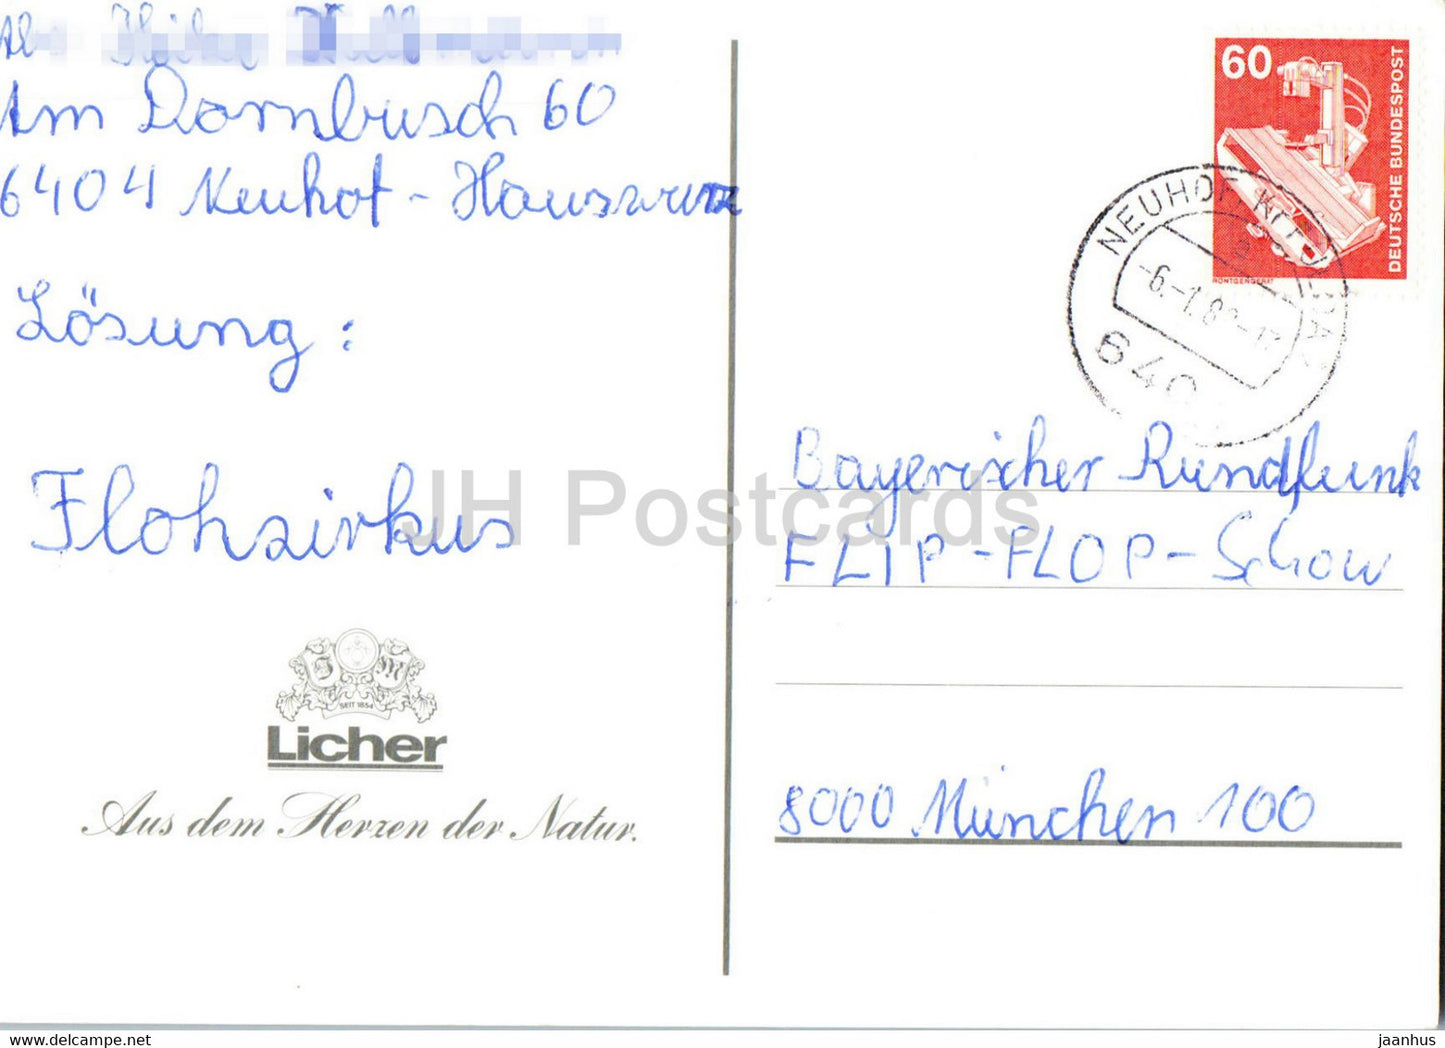 Christmas Greeting Card - Aus dem herzen der Natur - Licher - 1980s - Germany - used